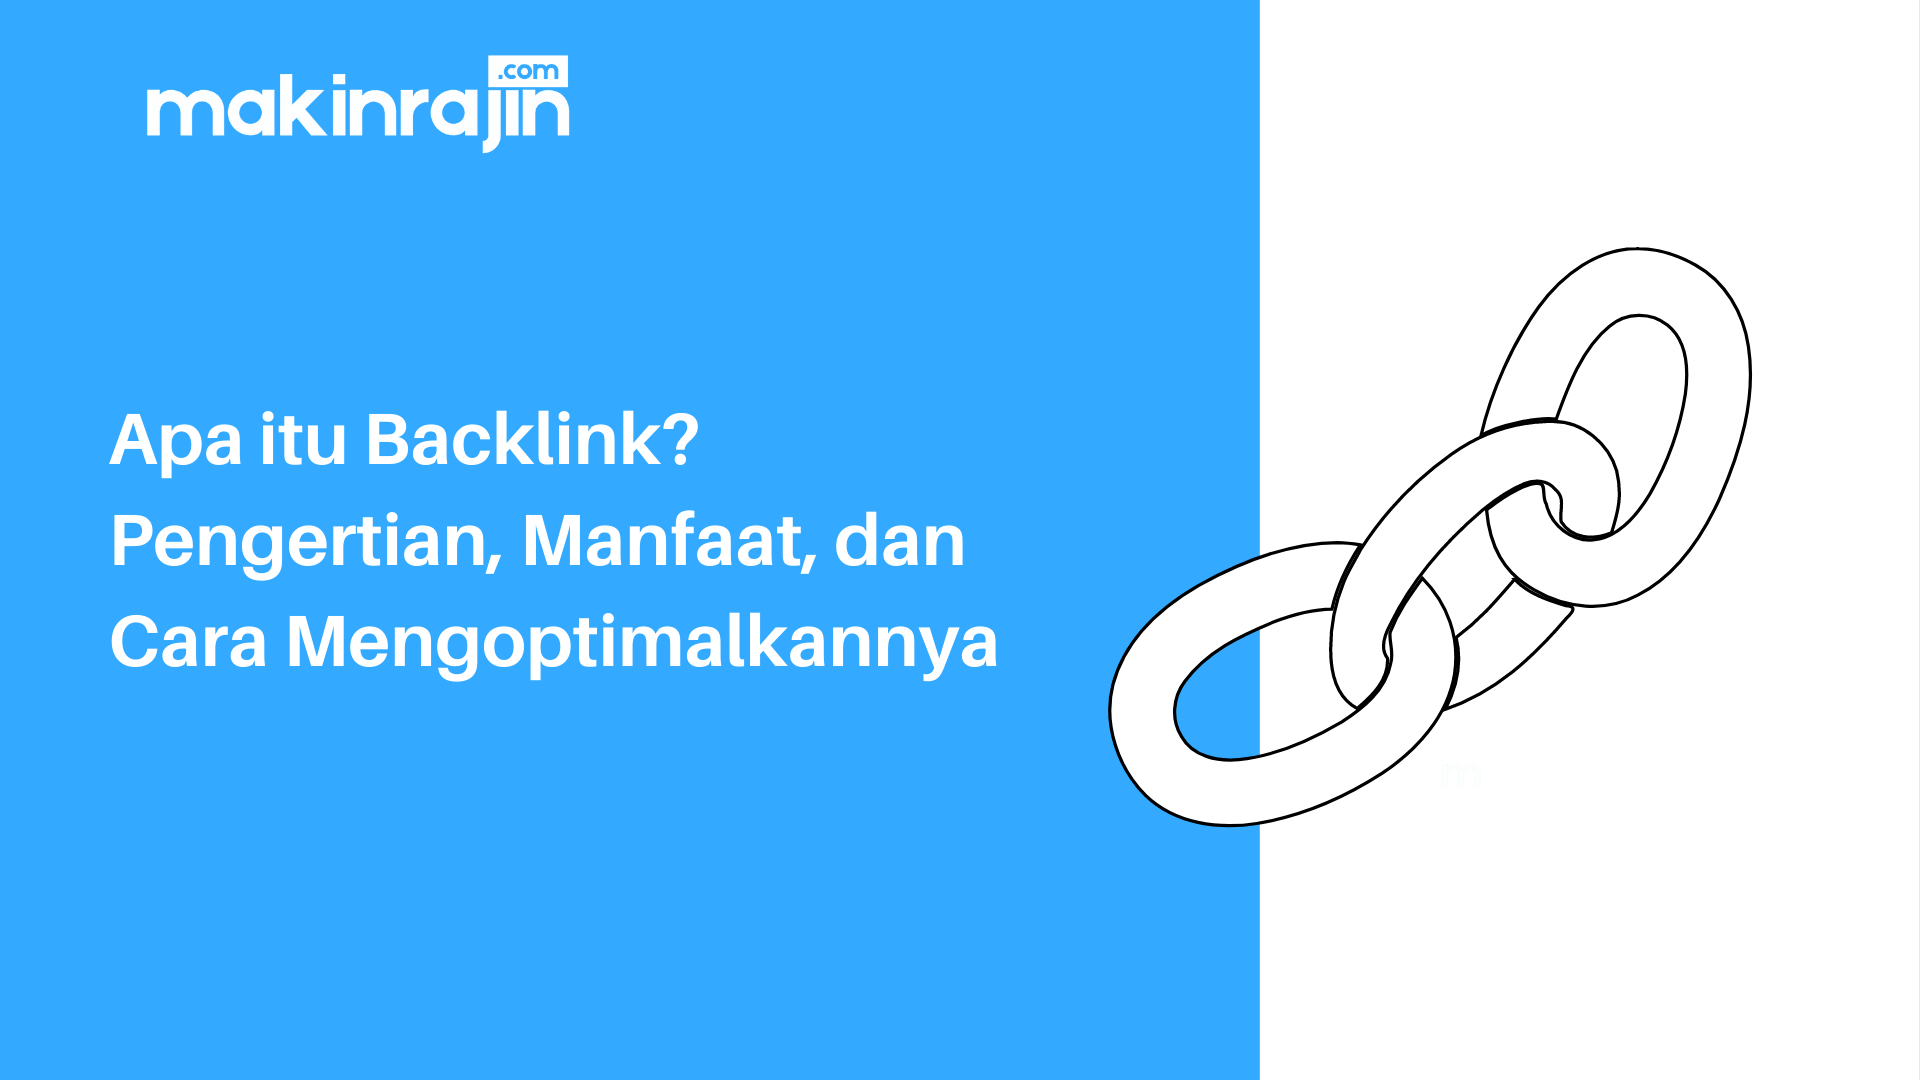 Apa itu Backlink - Pengertian, Manfaat, dan Cara Mengoptimalkannya